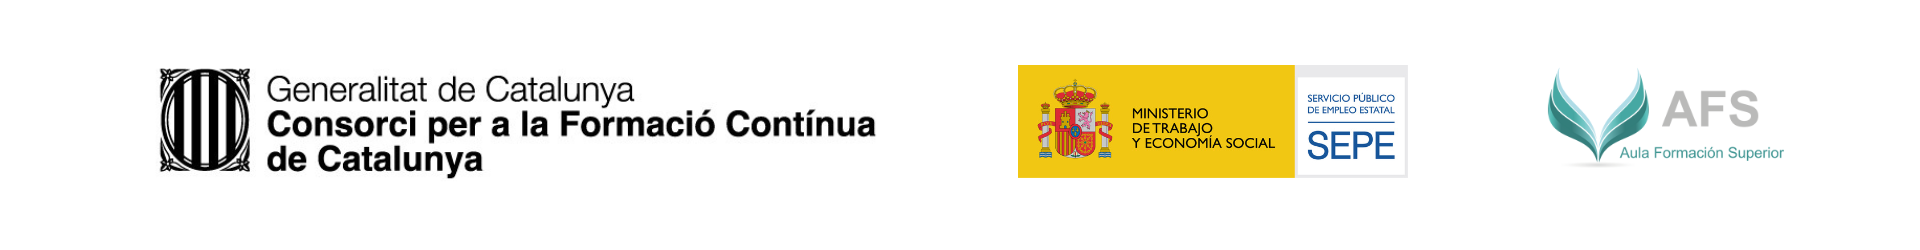 Logos Cataluña AULA